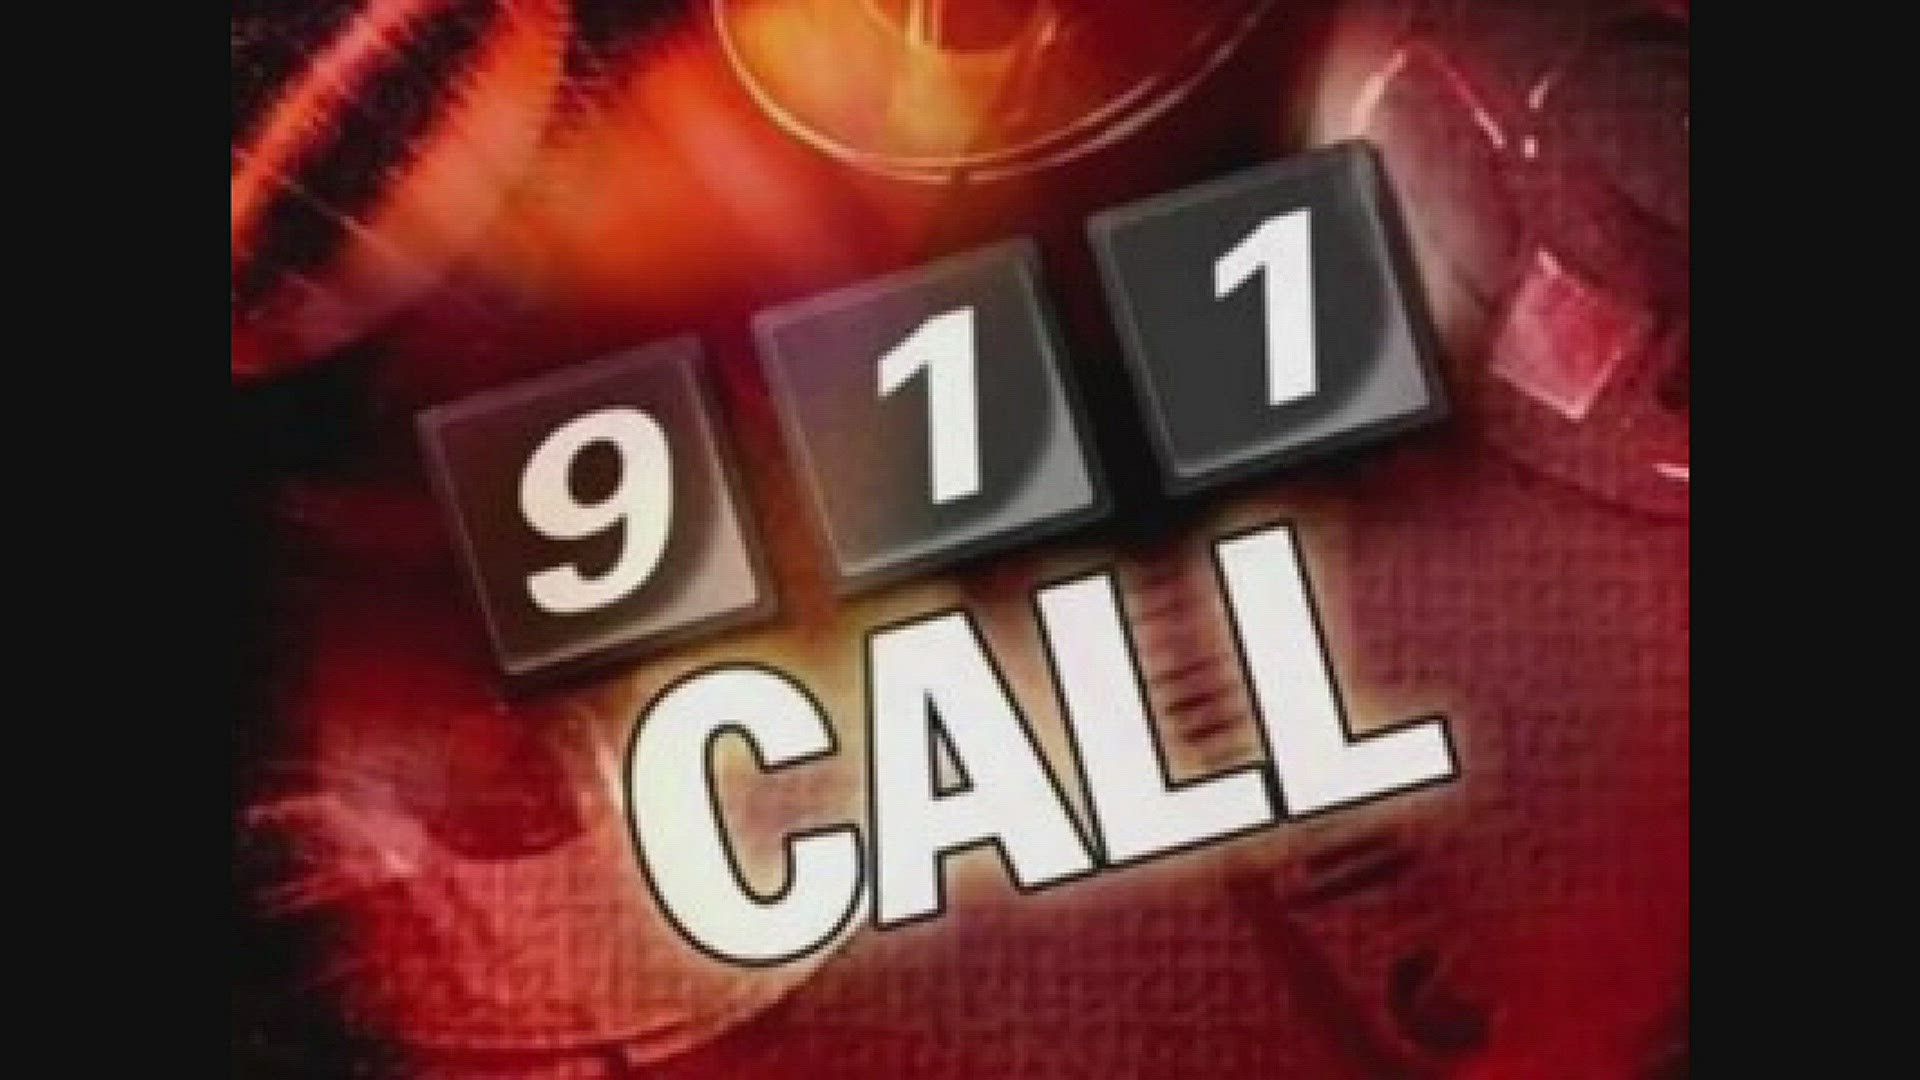 911 call from Corner Alley employee describing shooting